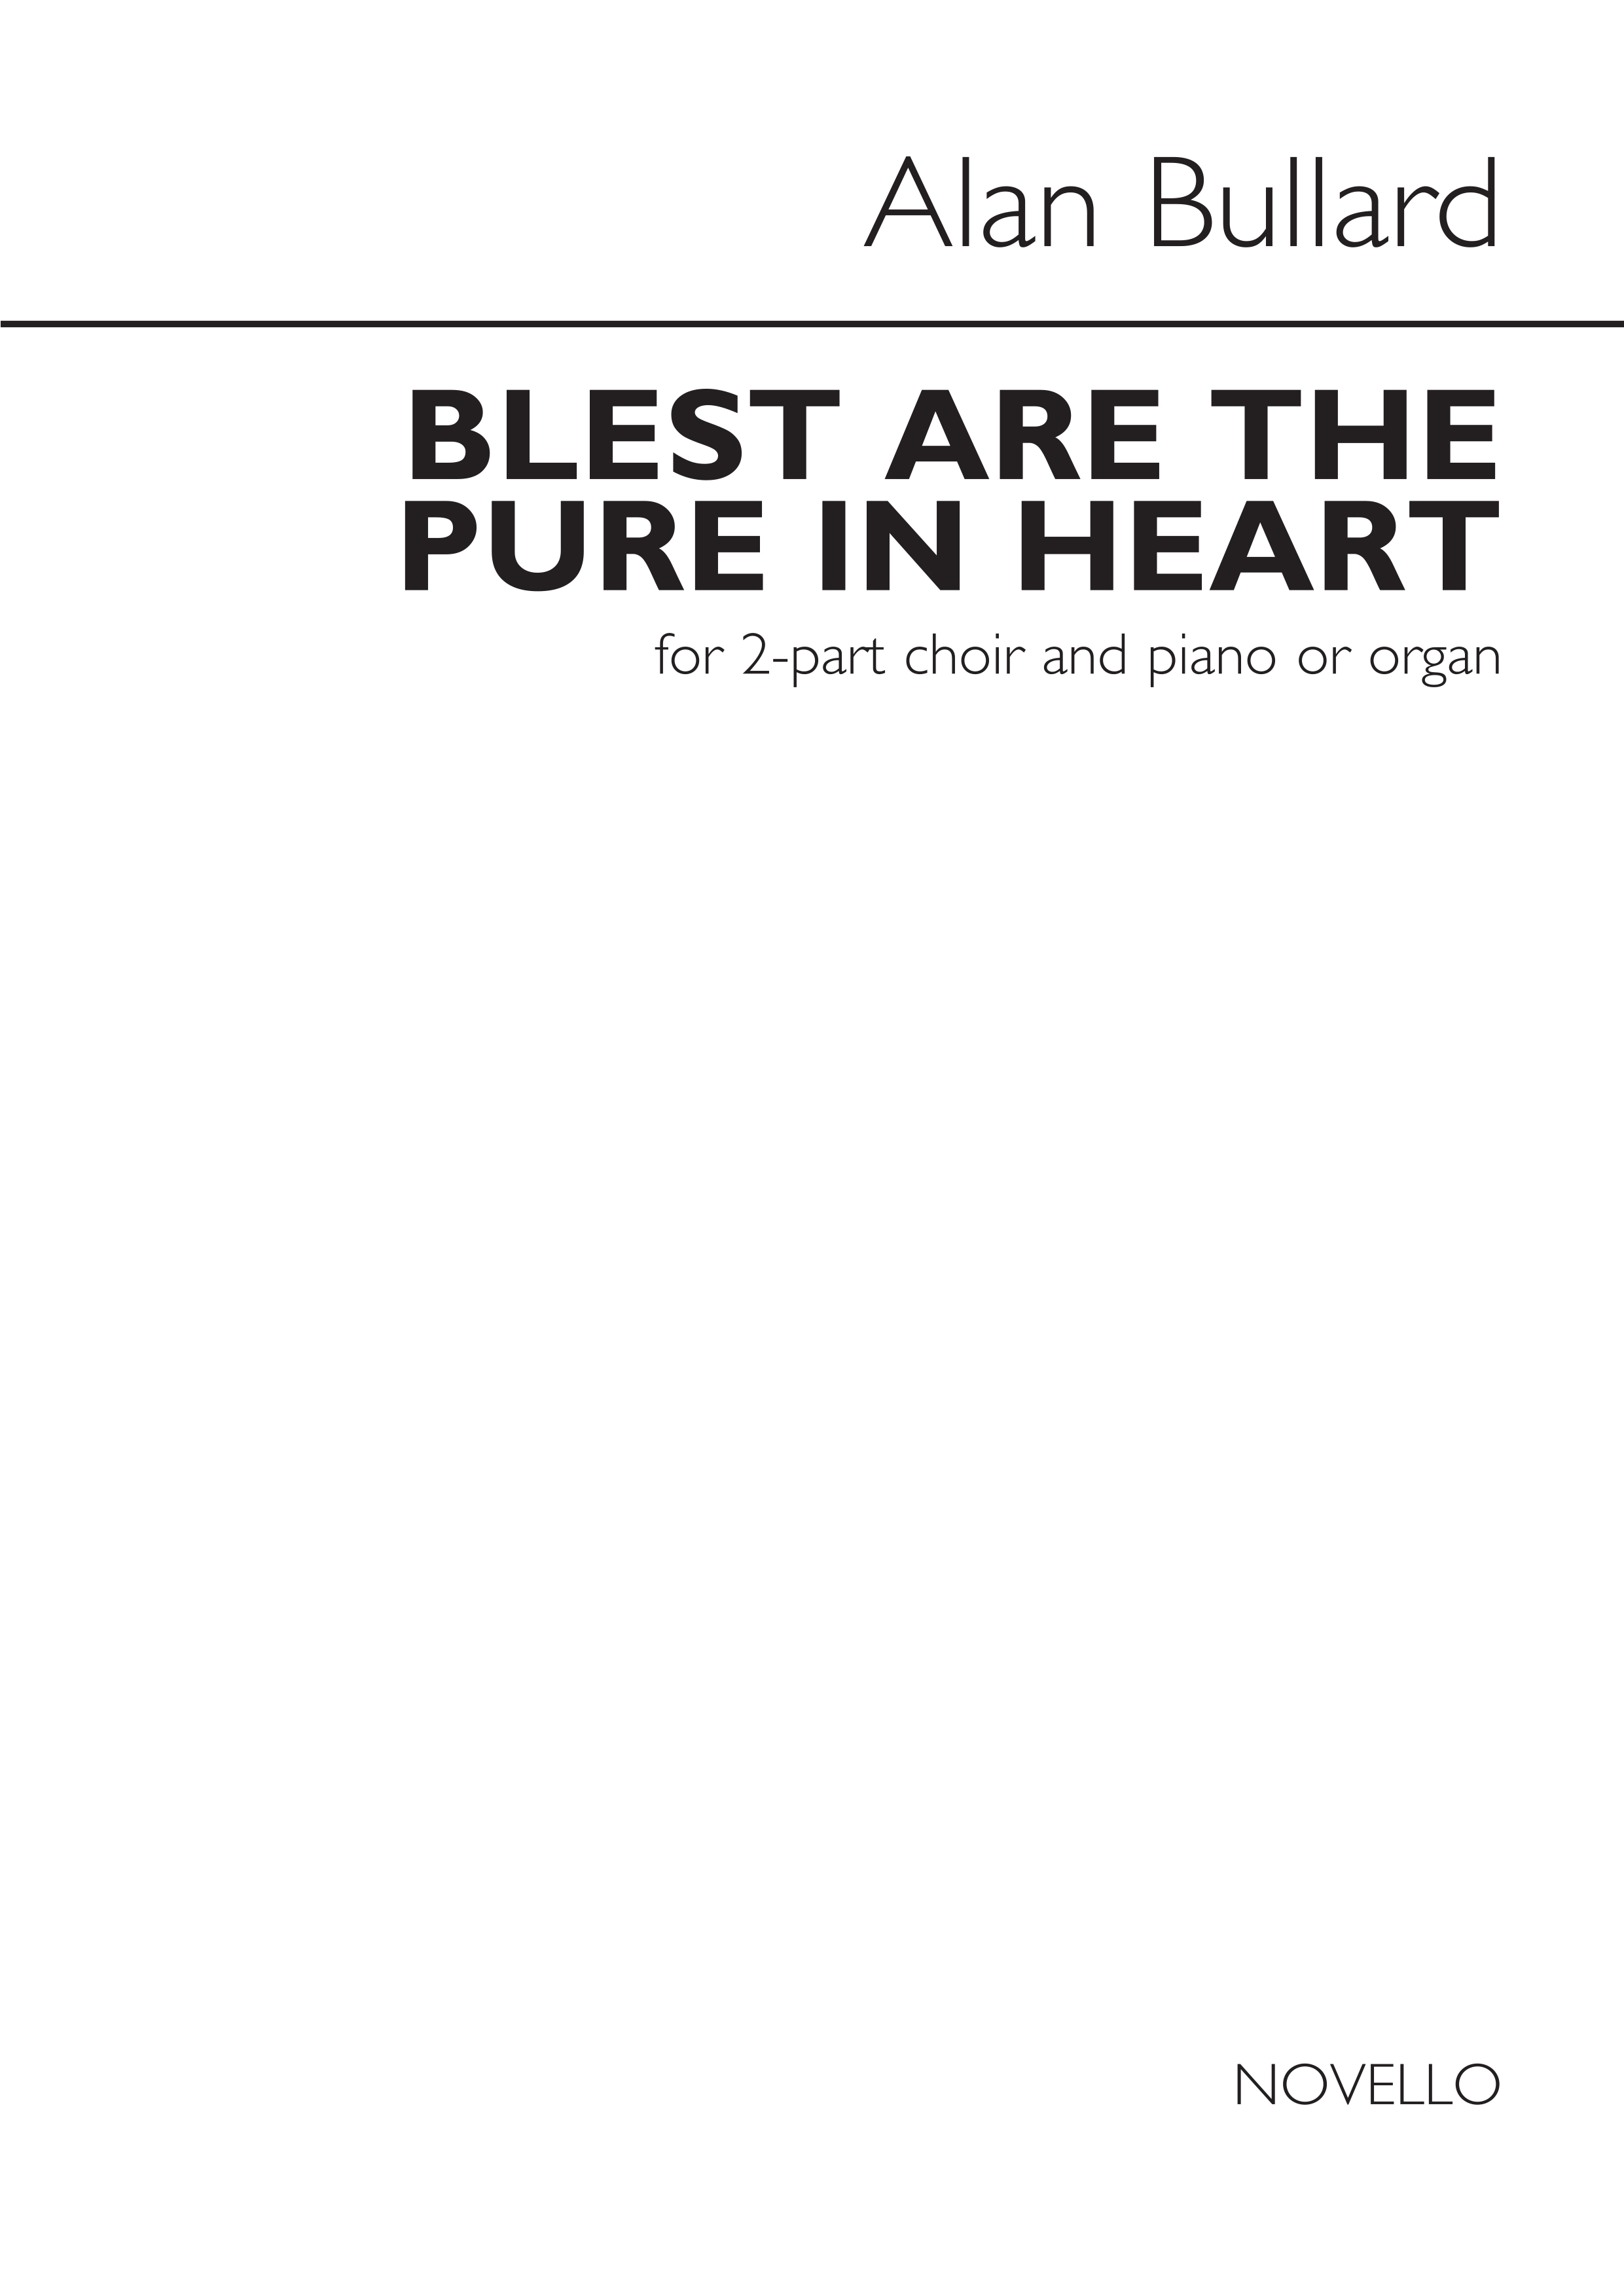 Alan Bullard: Alan Bullard: Blest Are The Pure In Heart: 2-Part Choir: Vocal